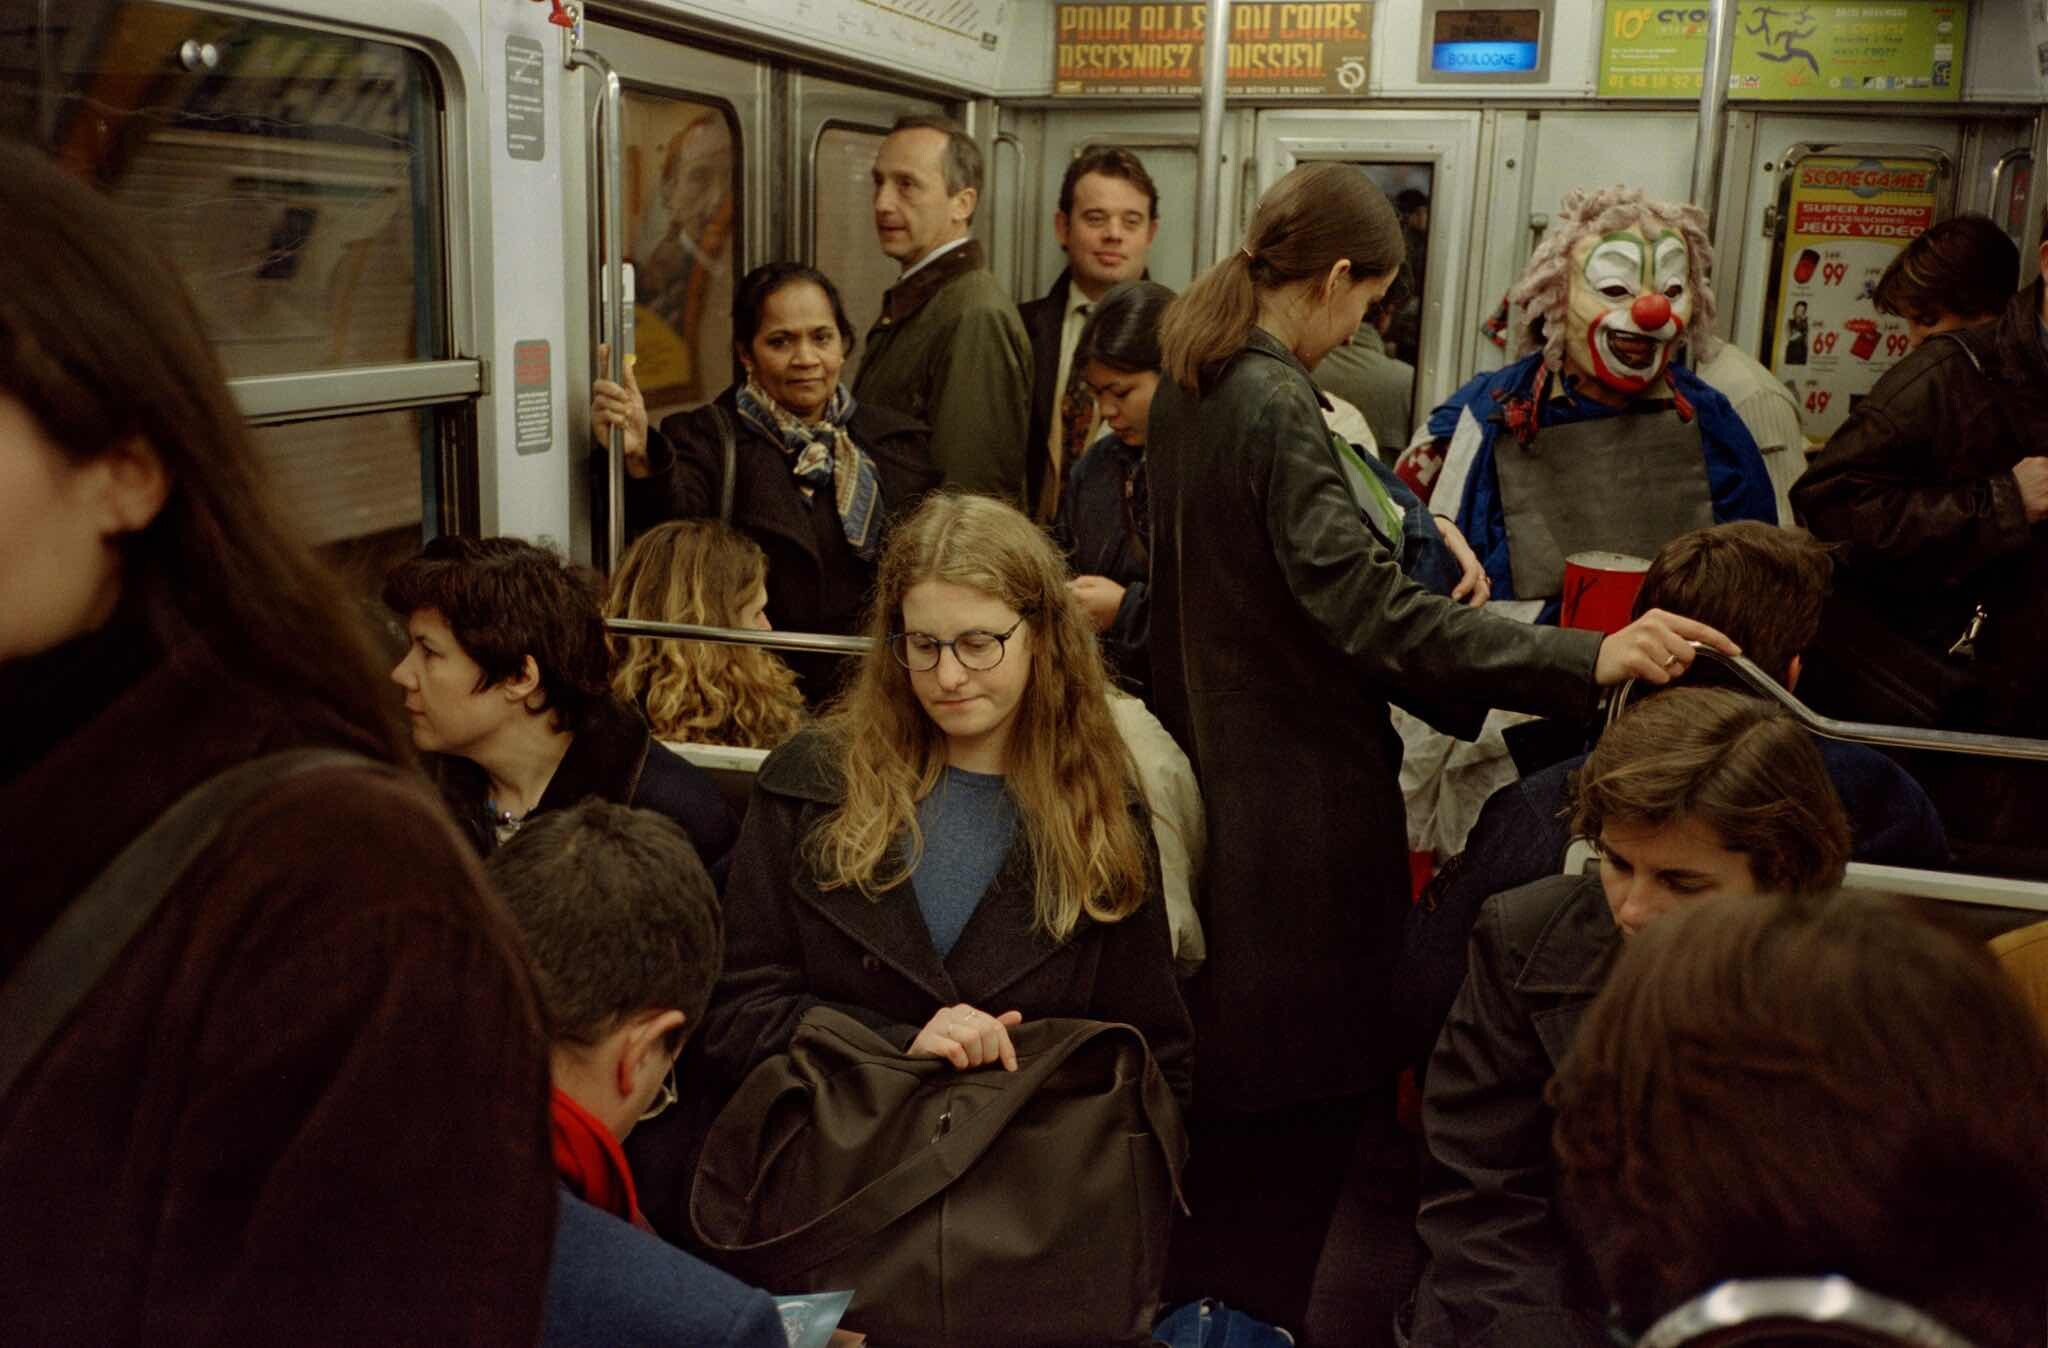 Проект Ежедневный отчет, Париж, сцена в метро с человеком в маске, ноябрь, 1999 год. Фотограф Франк Хорват